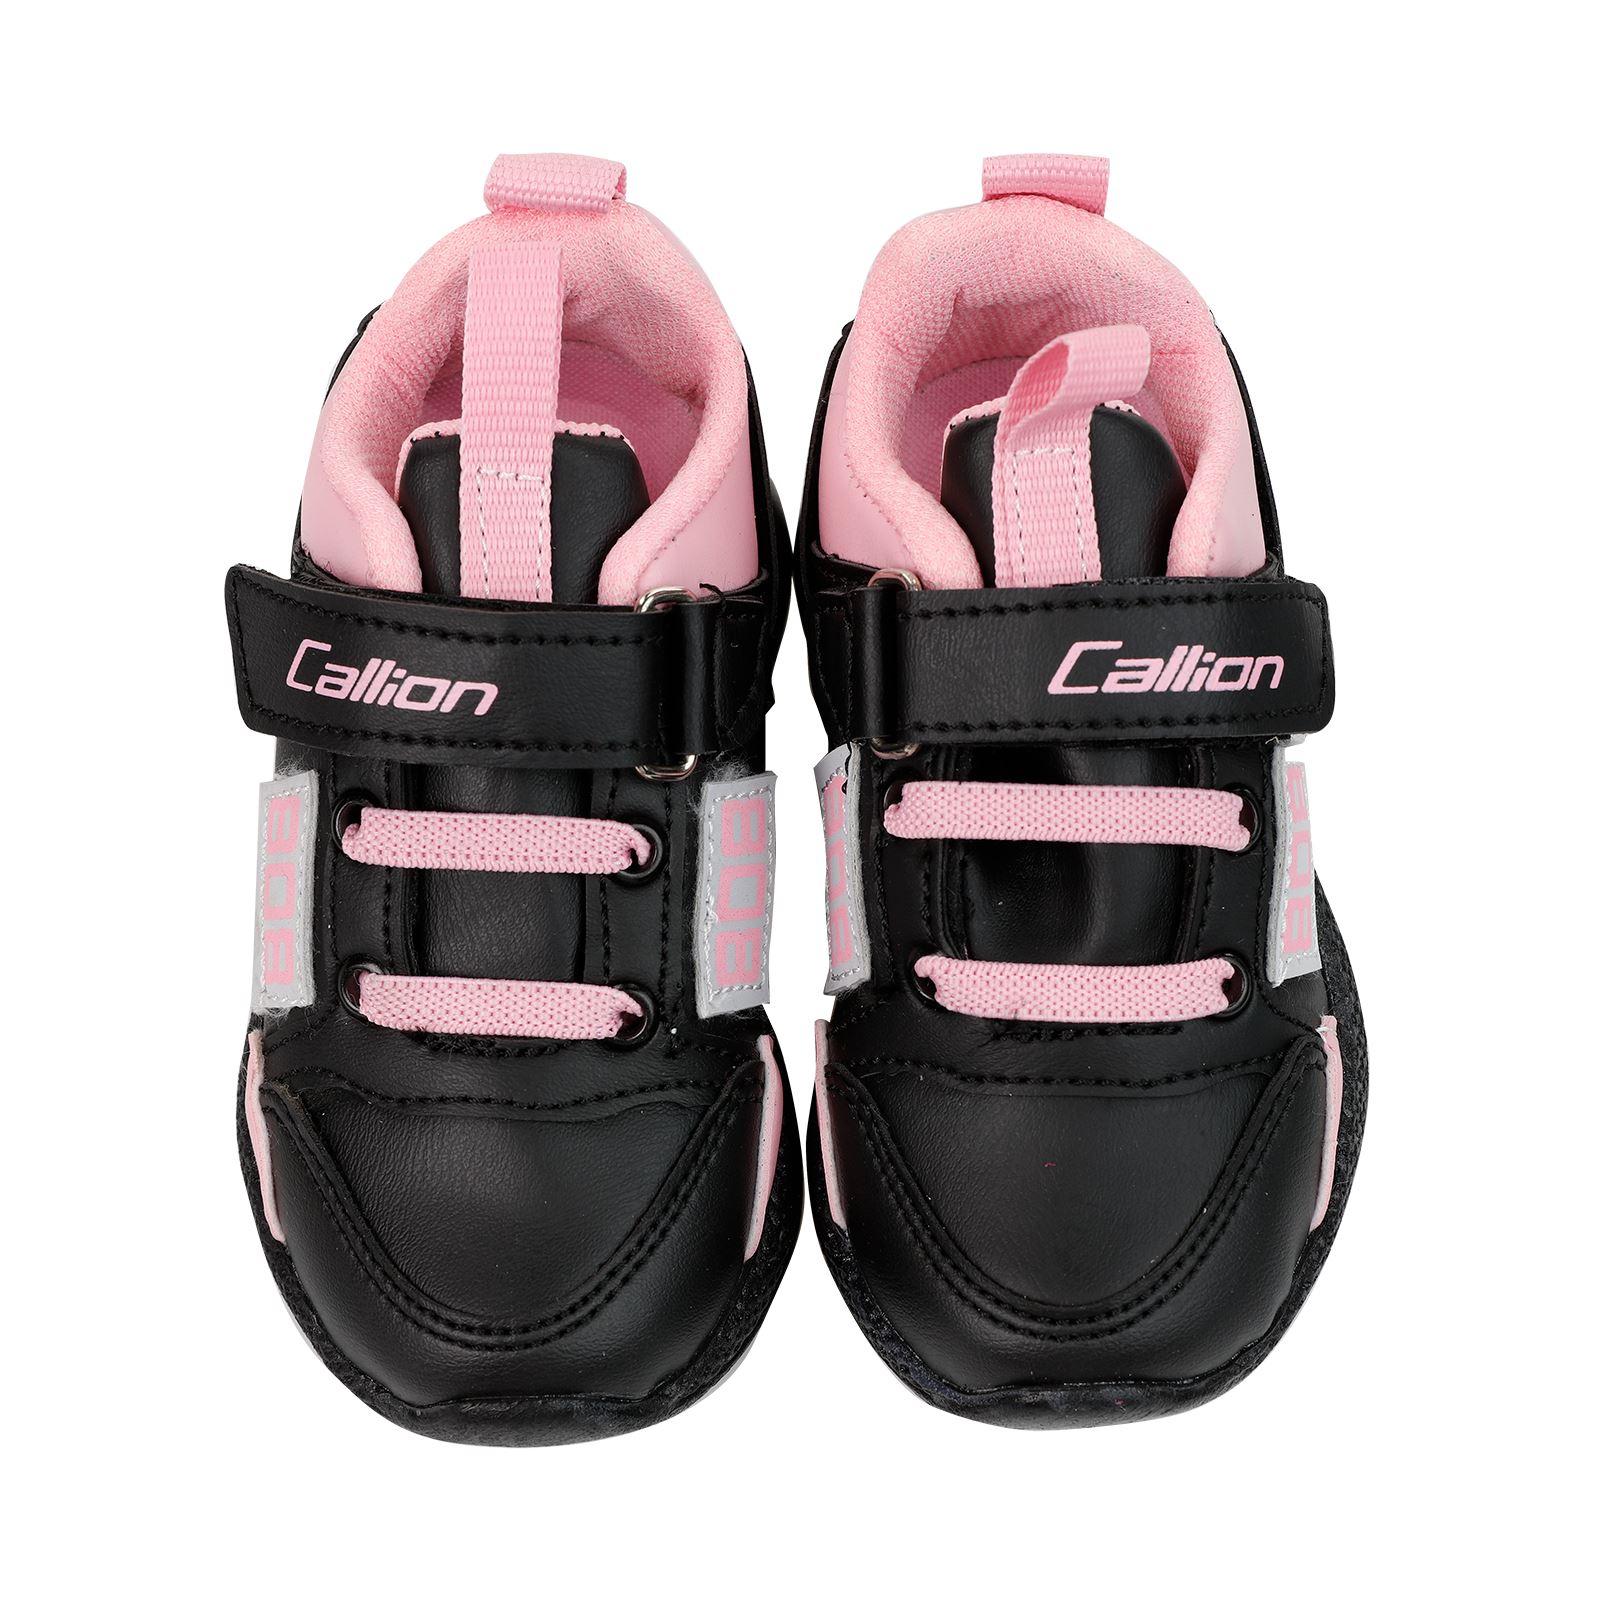 Callion Kız Çocuk Spor Ayakkabı 22-25 Numara Siyah-Pembe